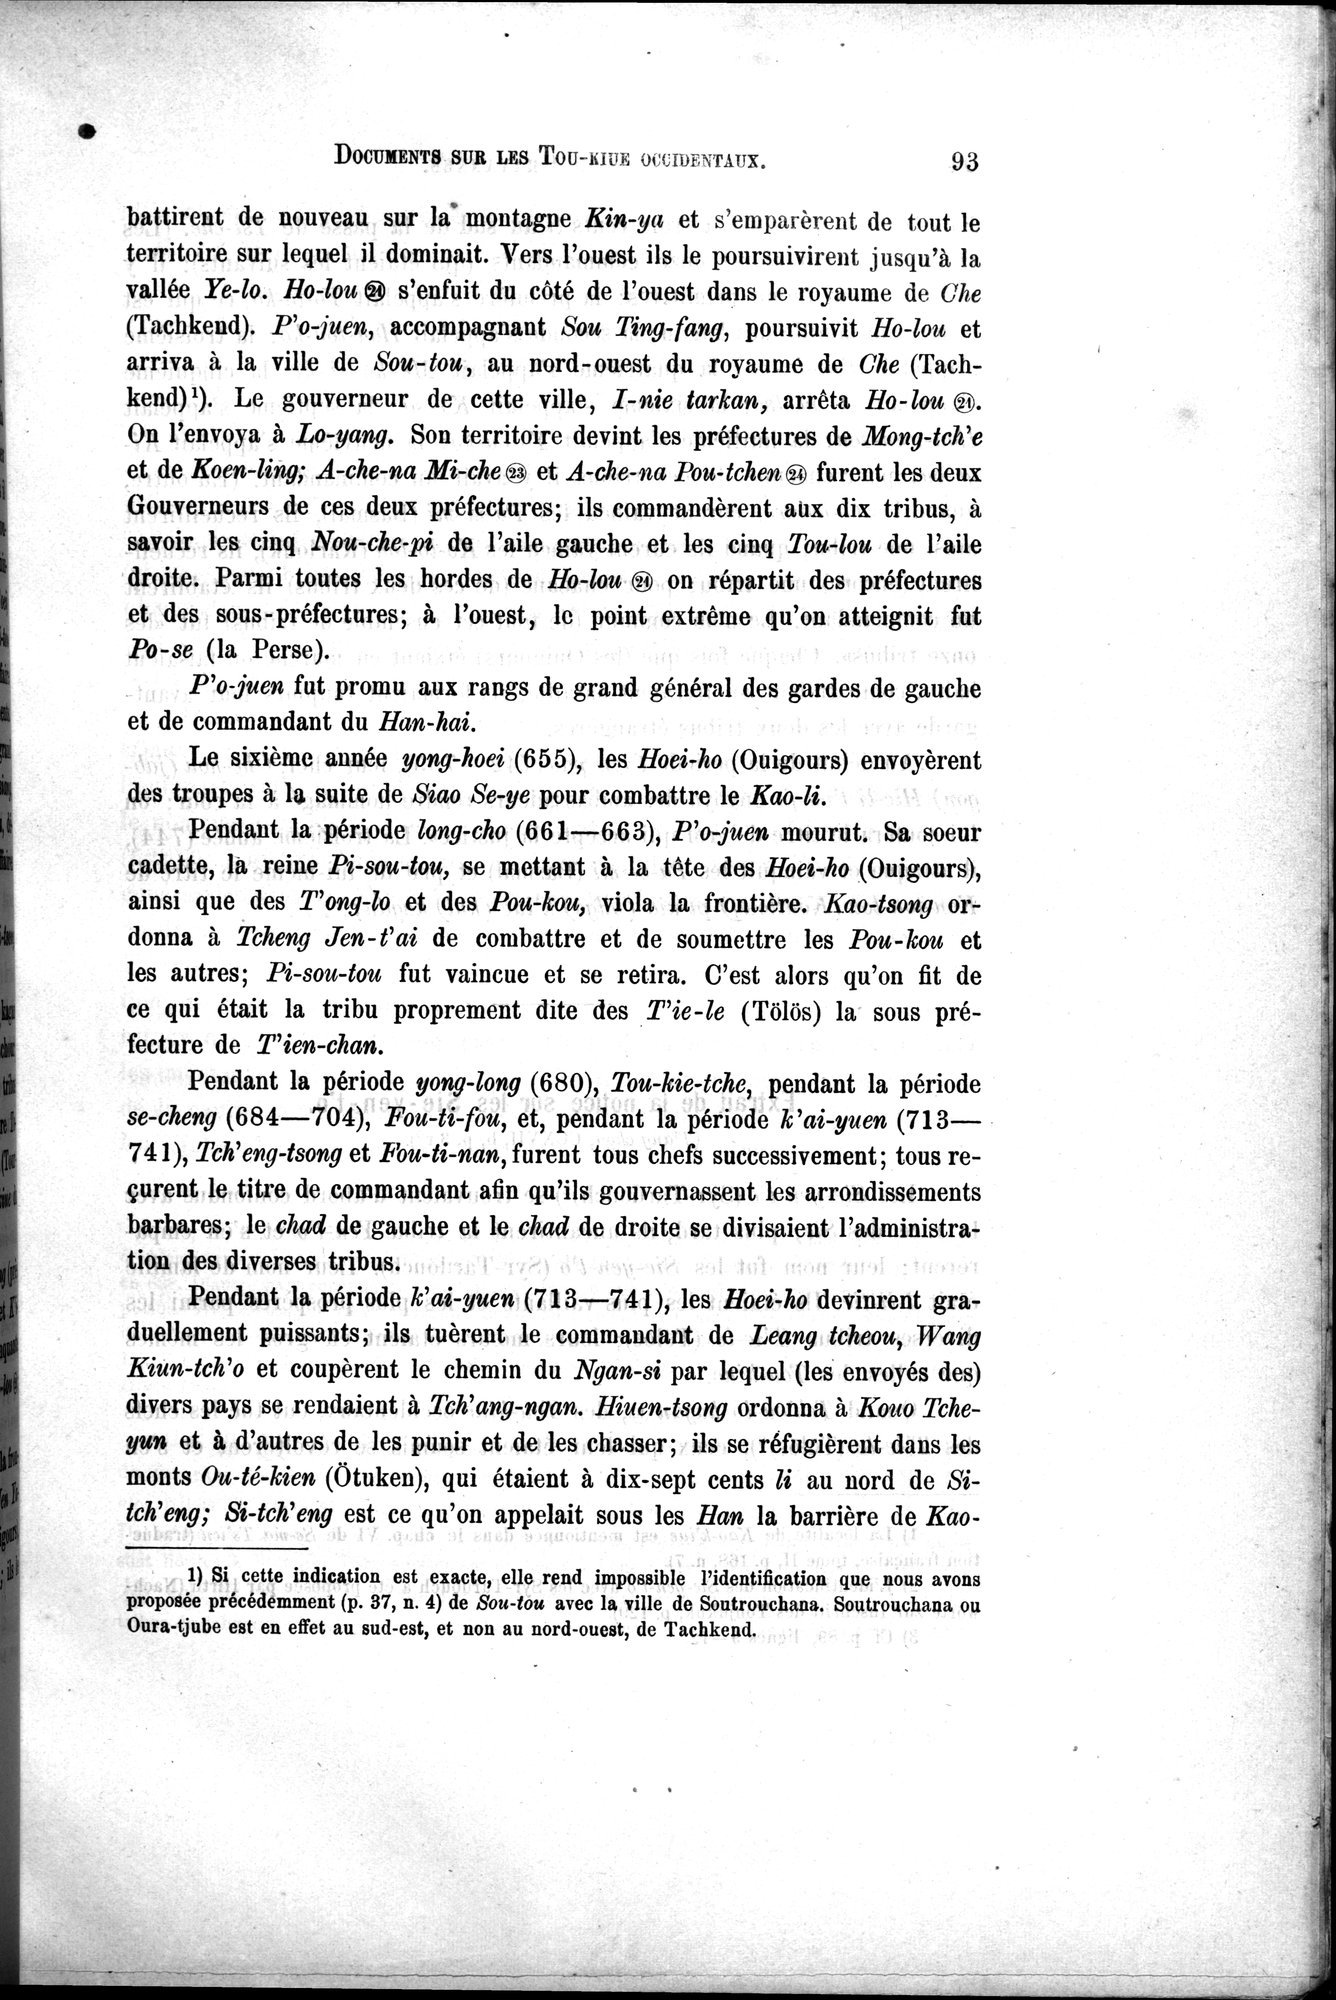 Documents sur les Tou-kiue (Turcs) occidentaux : vol.1 / Page 103 (Grayscale High Resolution Image)